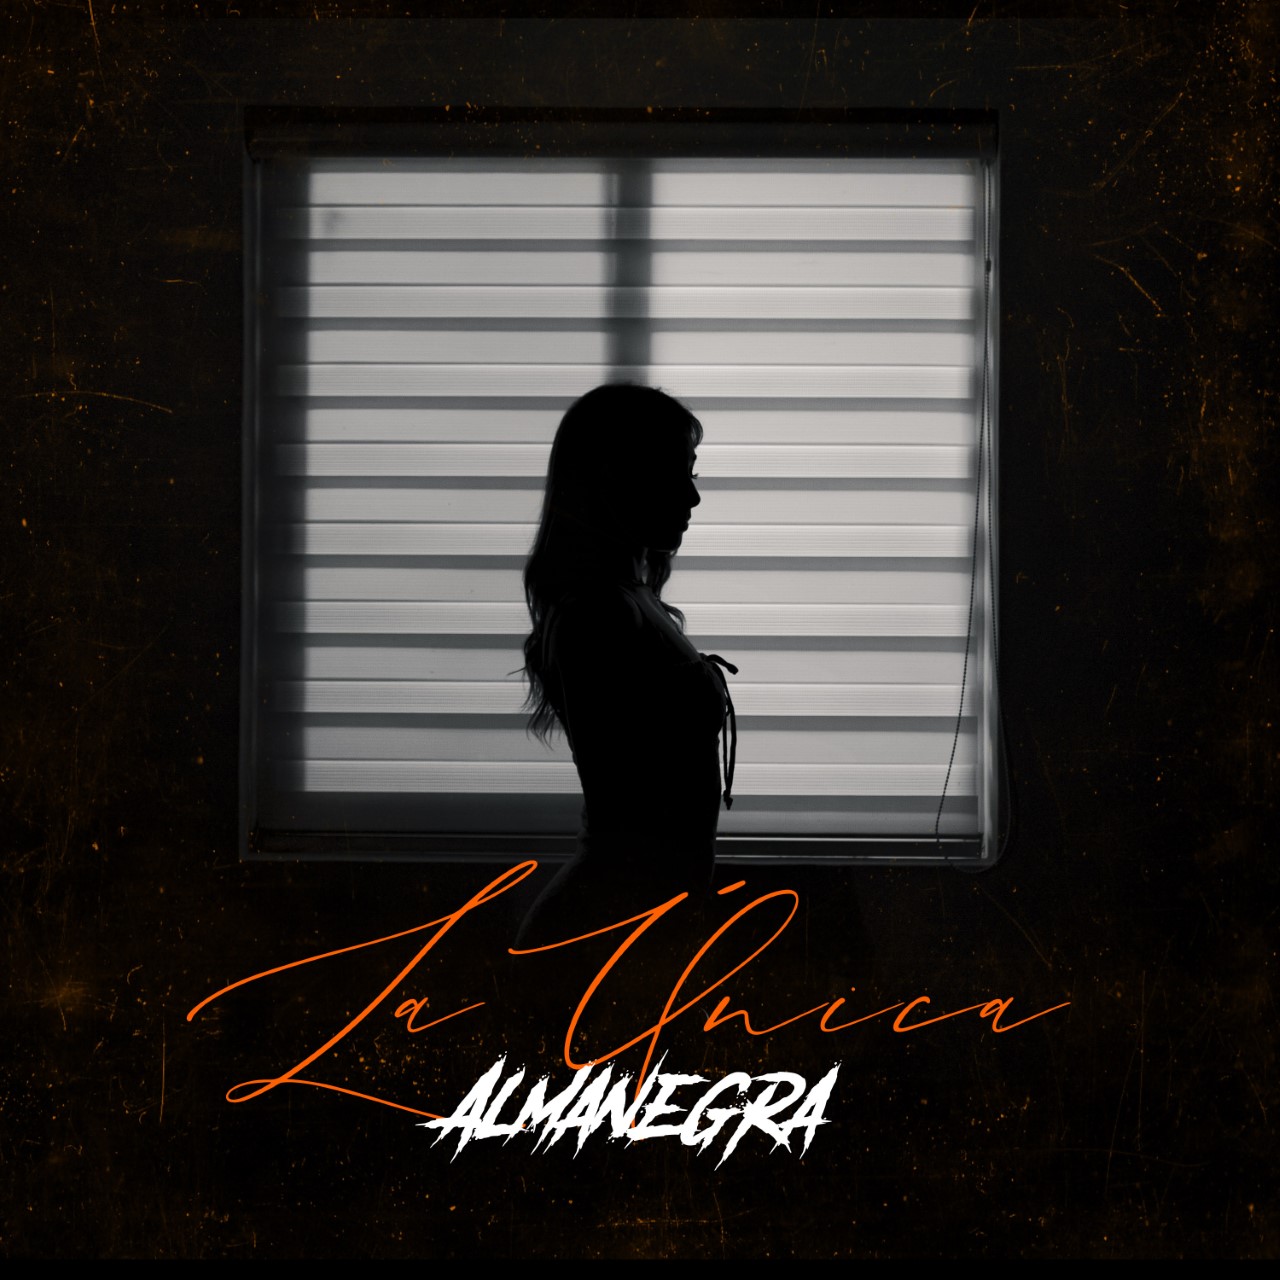 “La única” es el nuevo tema musical del rapero colombiano Almanegra